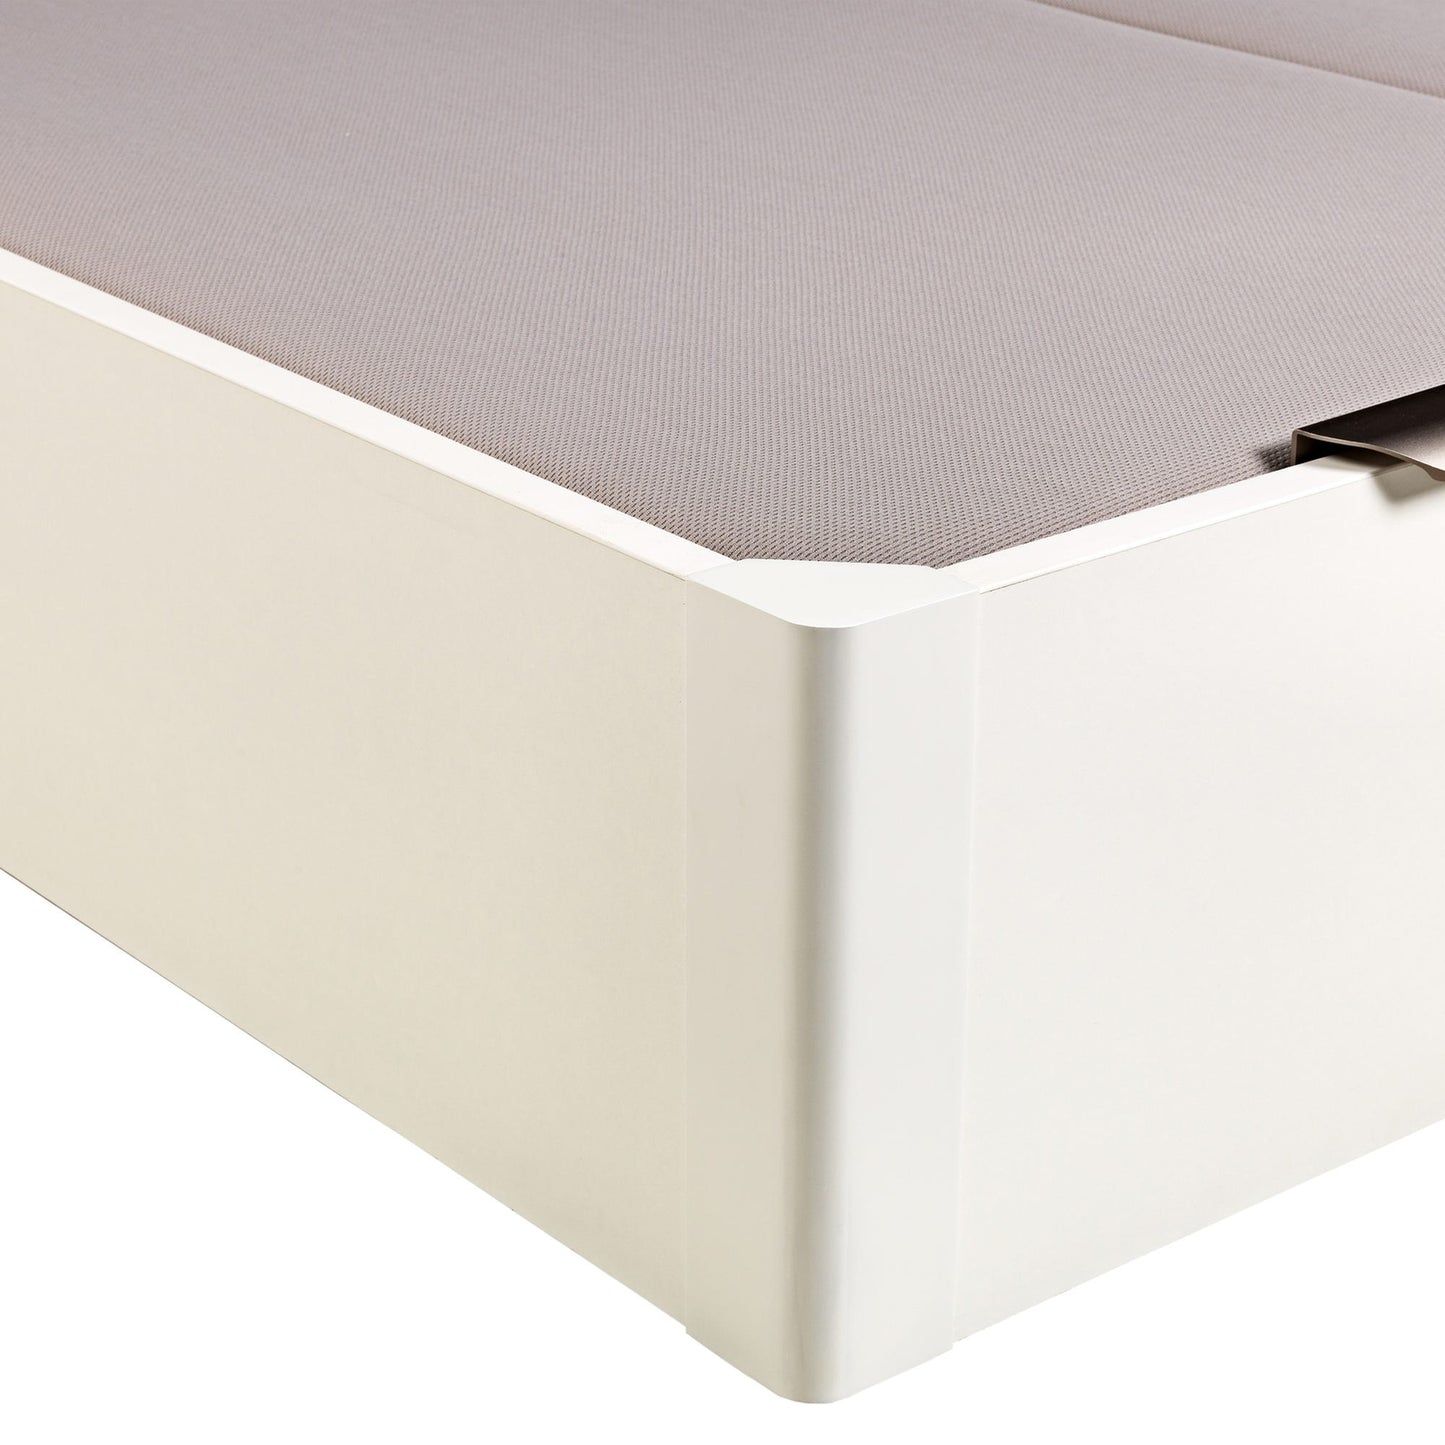 Canapé abatible de madera de tapa doble de color blanco - DESIGN - 180x182